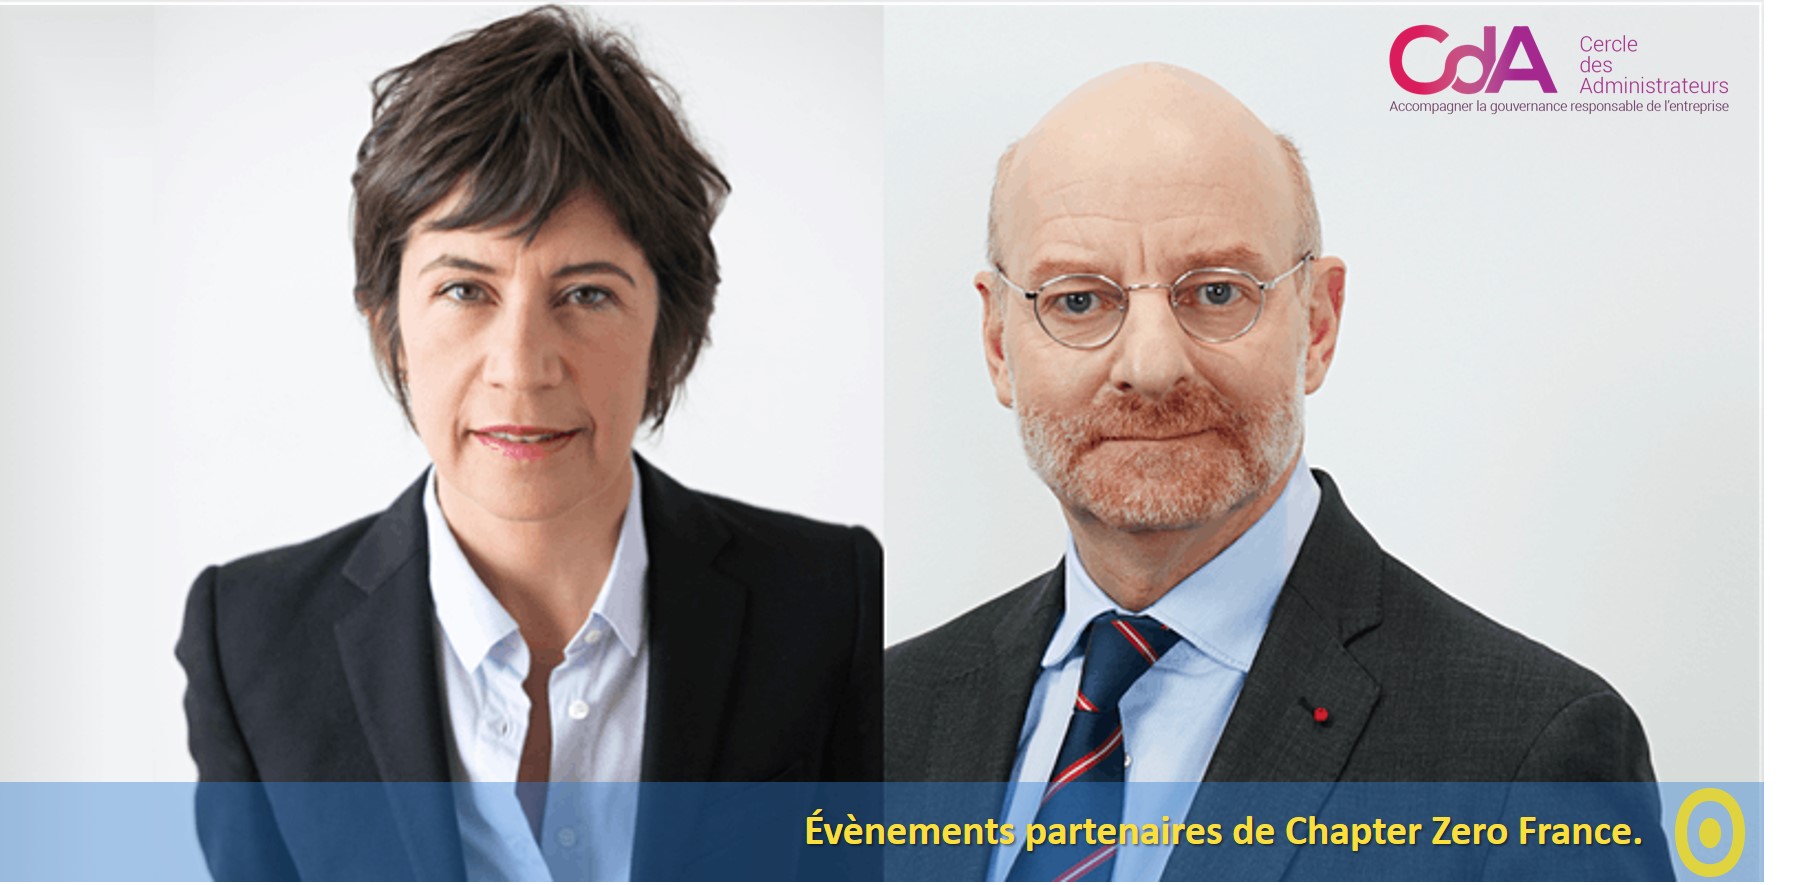 Matinale Cercle des Administrateurs avec Monica de Virgiliis et Stéphane Volant